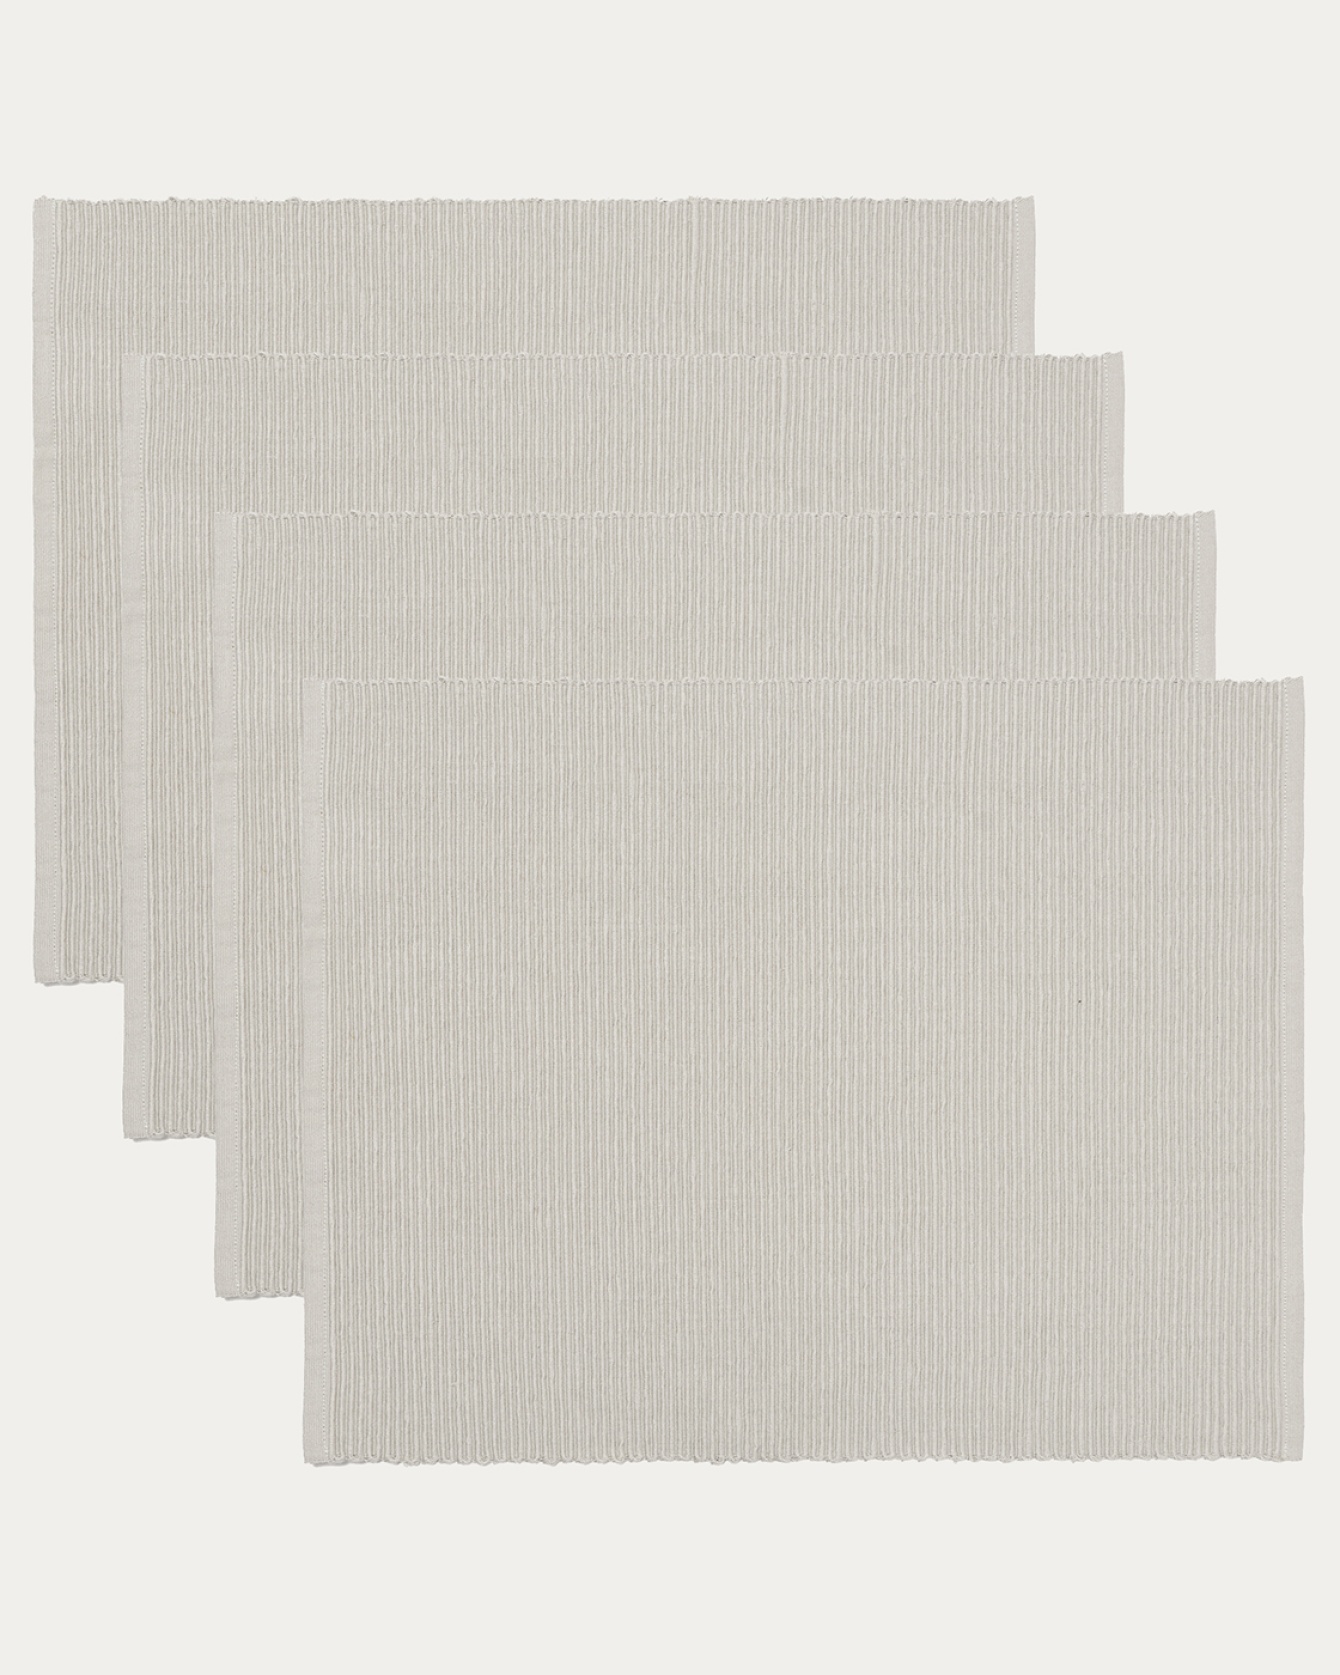 Image du produit set de table UNI gris perle en coton doux de qualité côtelée de LINUM DESIGN. Taille 35 x 46 cm et vendu en lot de 4.